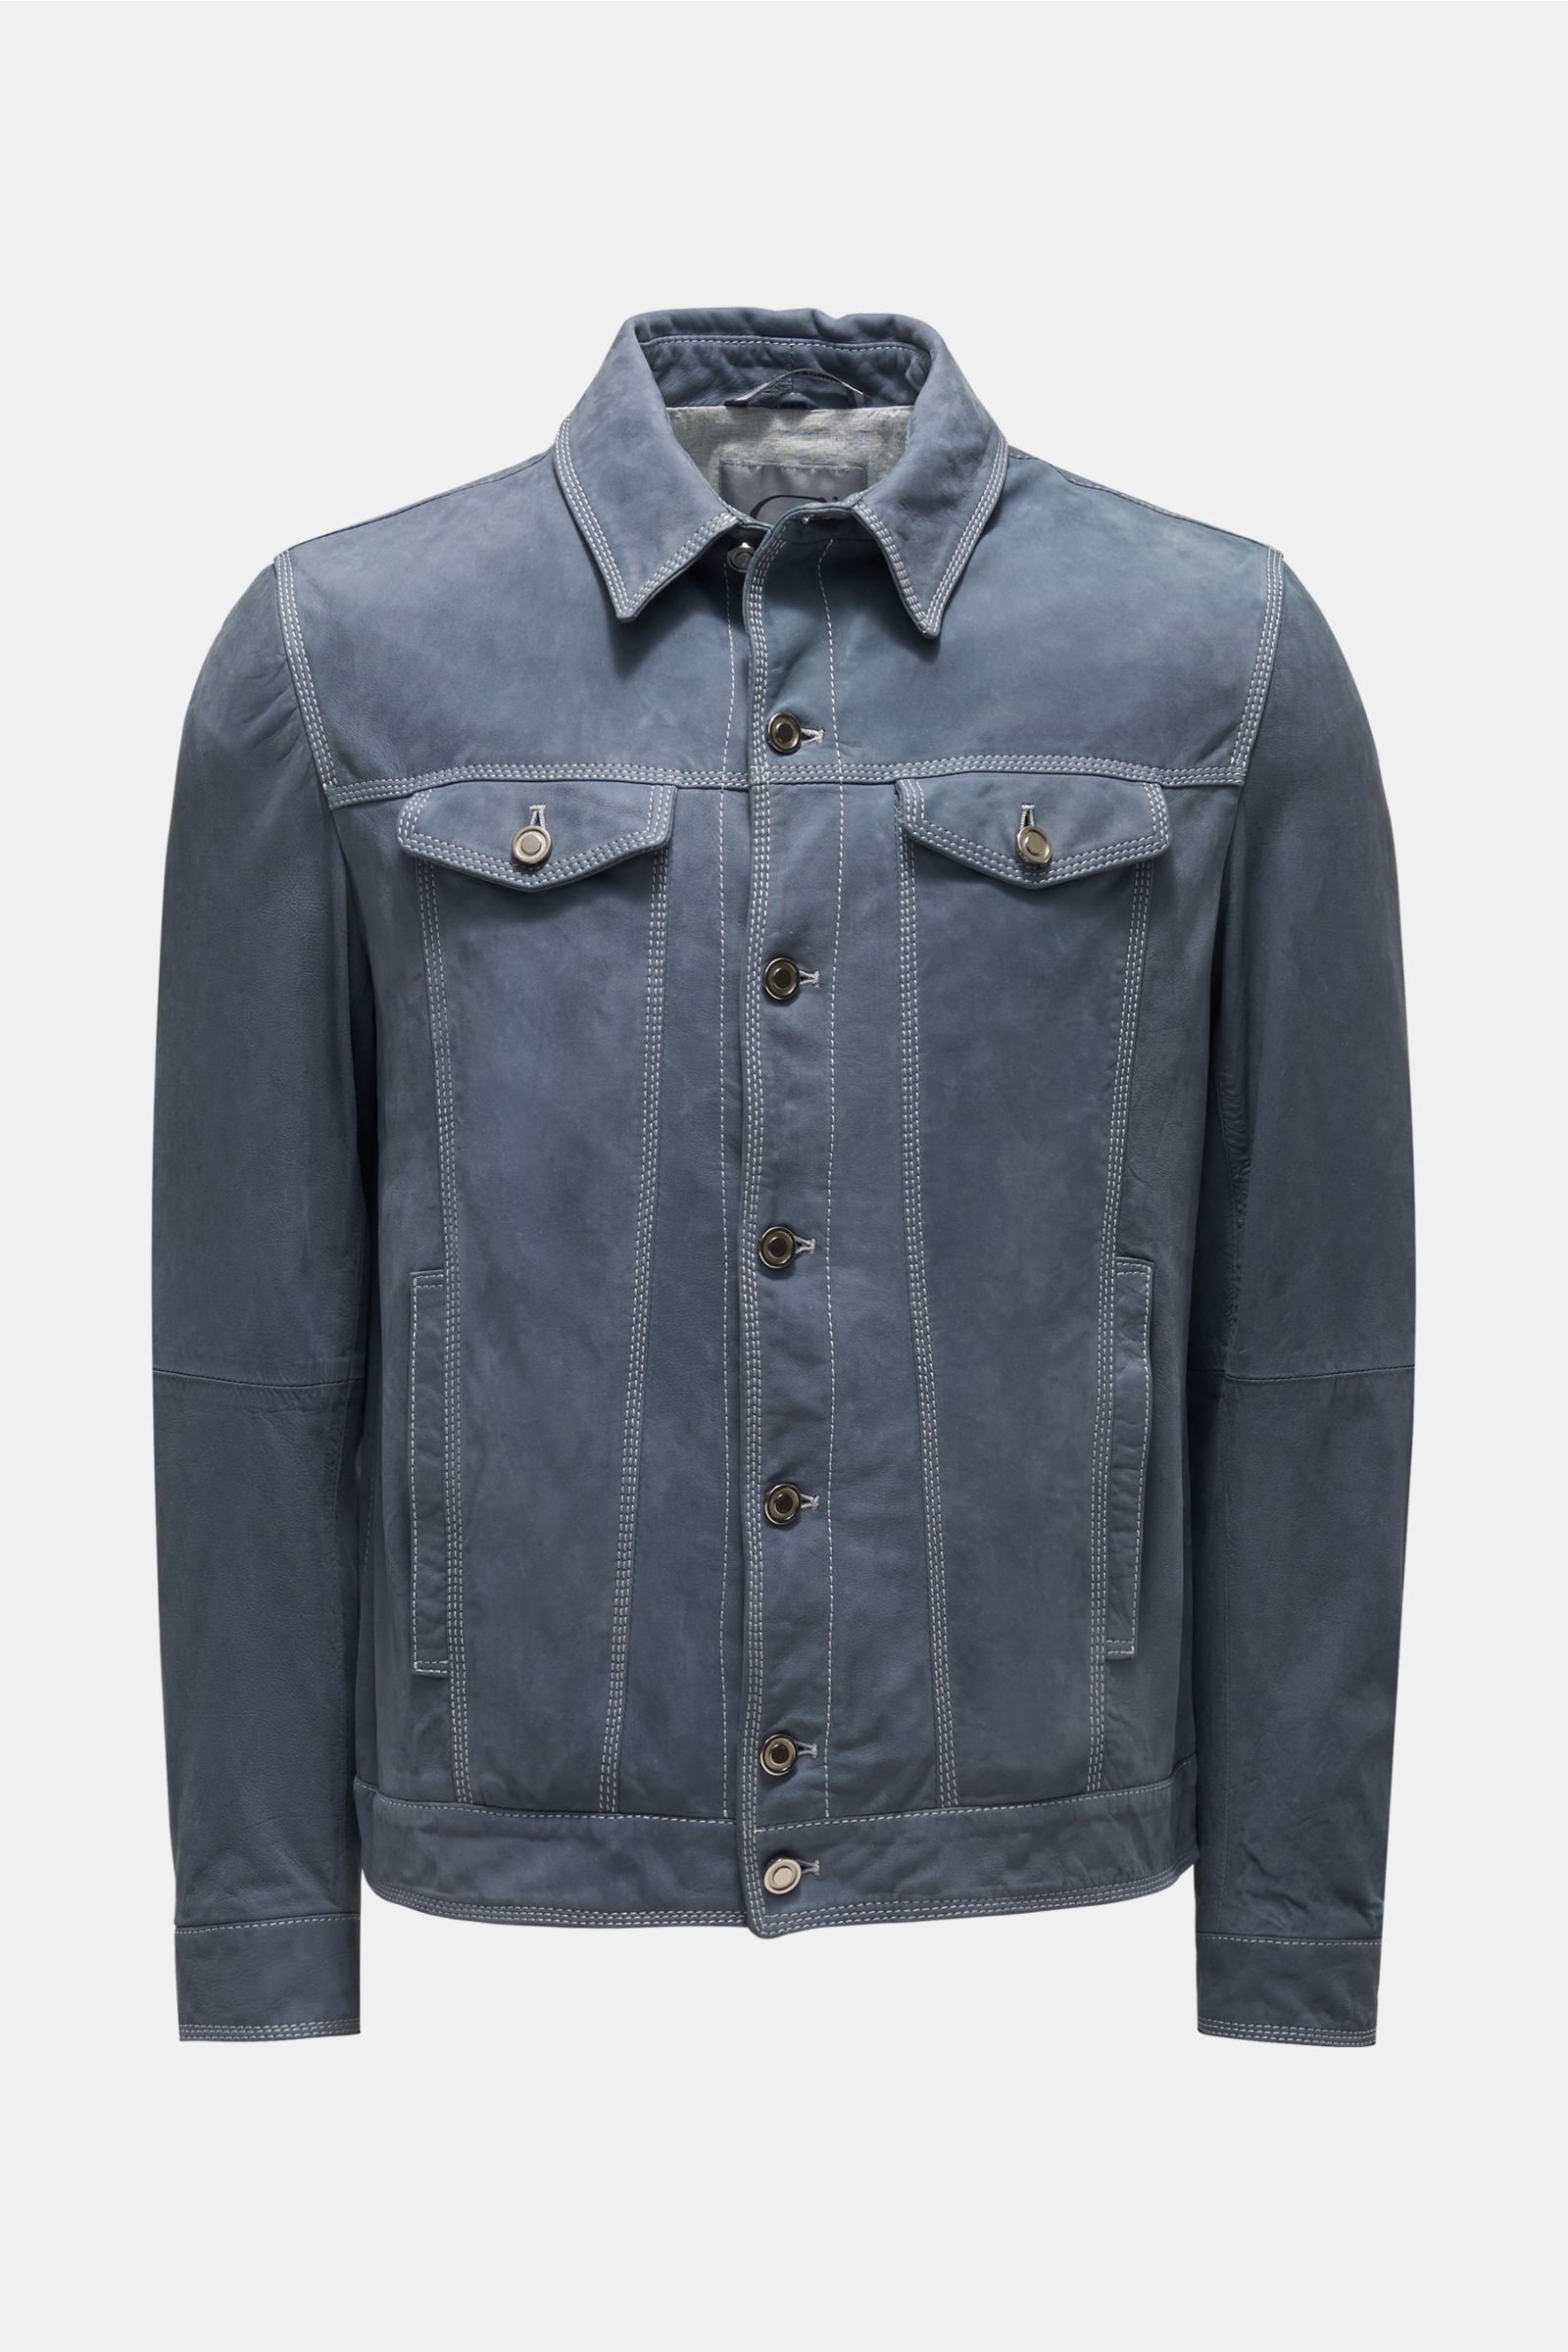 Leather jacket grey-blue